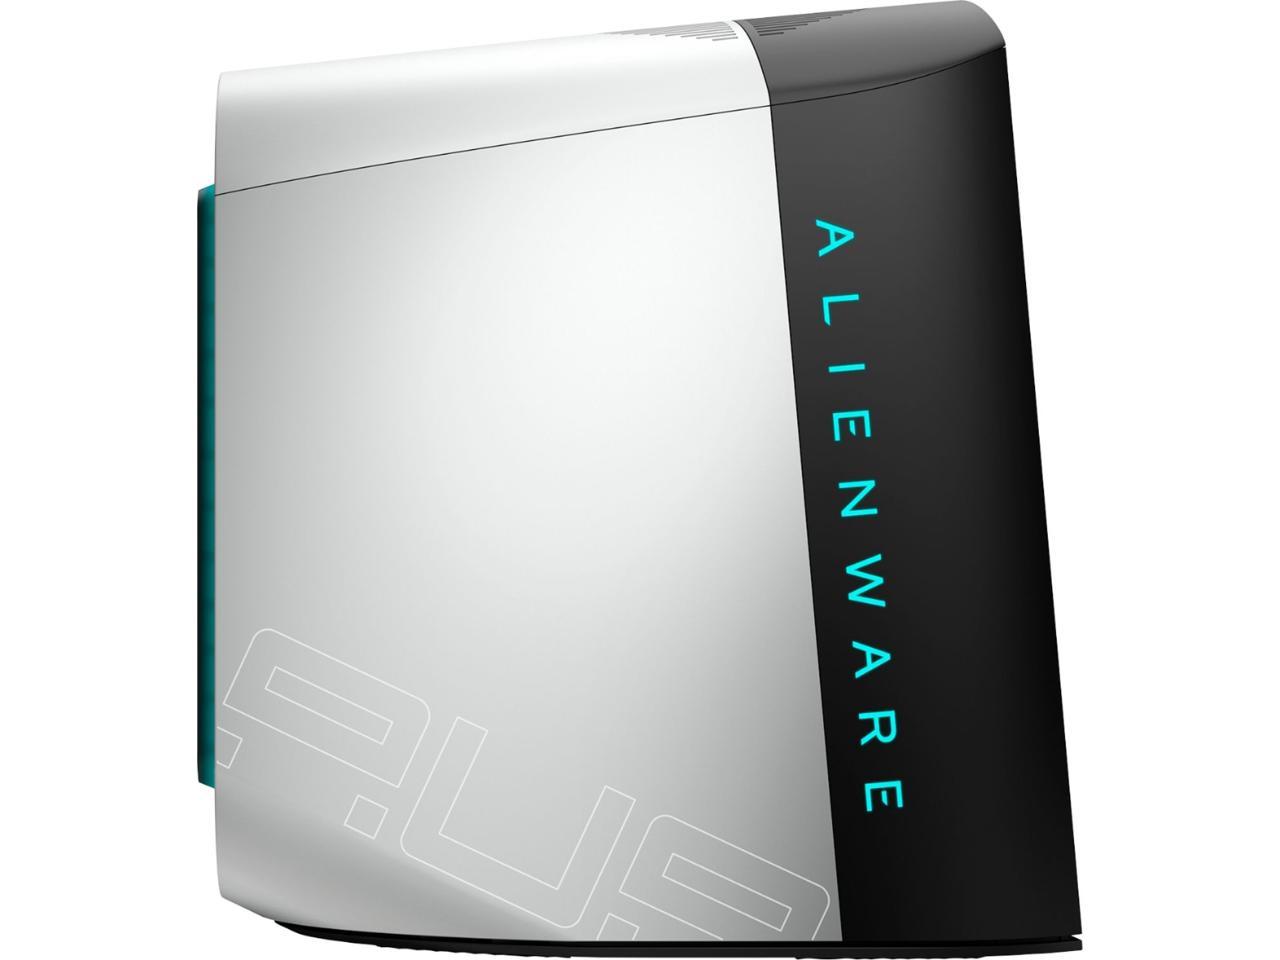 Alienware Aurora R11 Gaming Desktop, Intel i7-10700K, NVIDIA GeForce RTX 2070 Super 8GB GDDR6, 256GB NVMe SSD + 1TB SATA HDD, 16GB DDR4 XMP, DisplayPort, HDMI, AX Wi-Fi, Windows 10 Pro